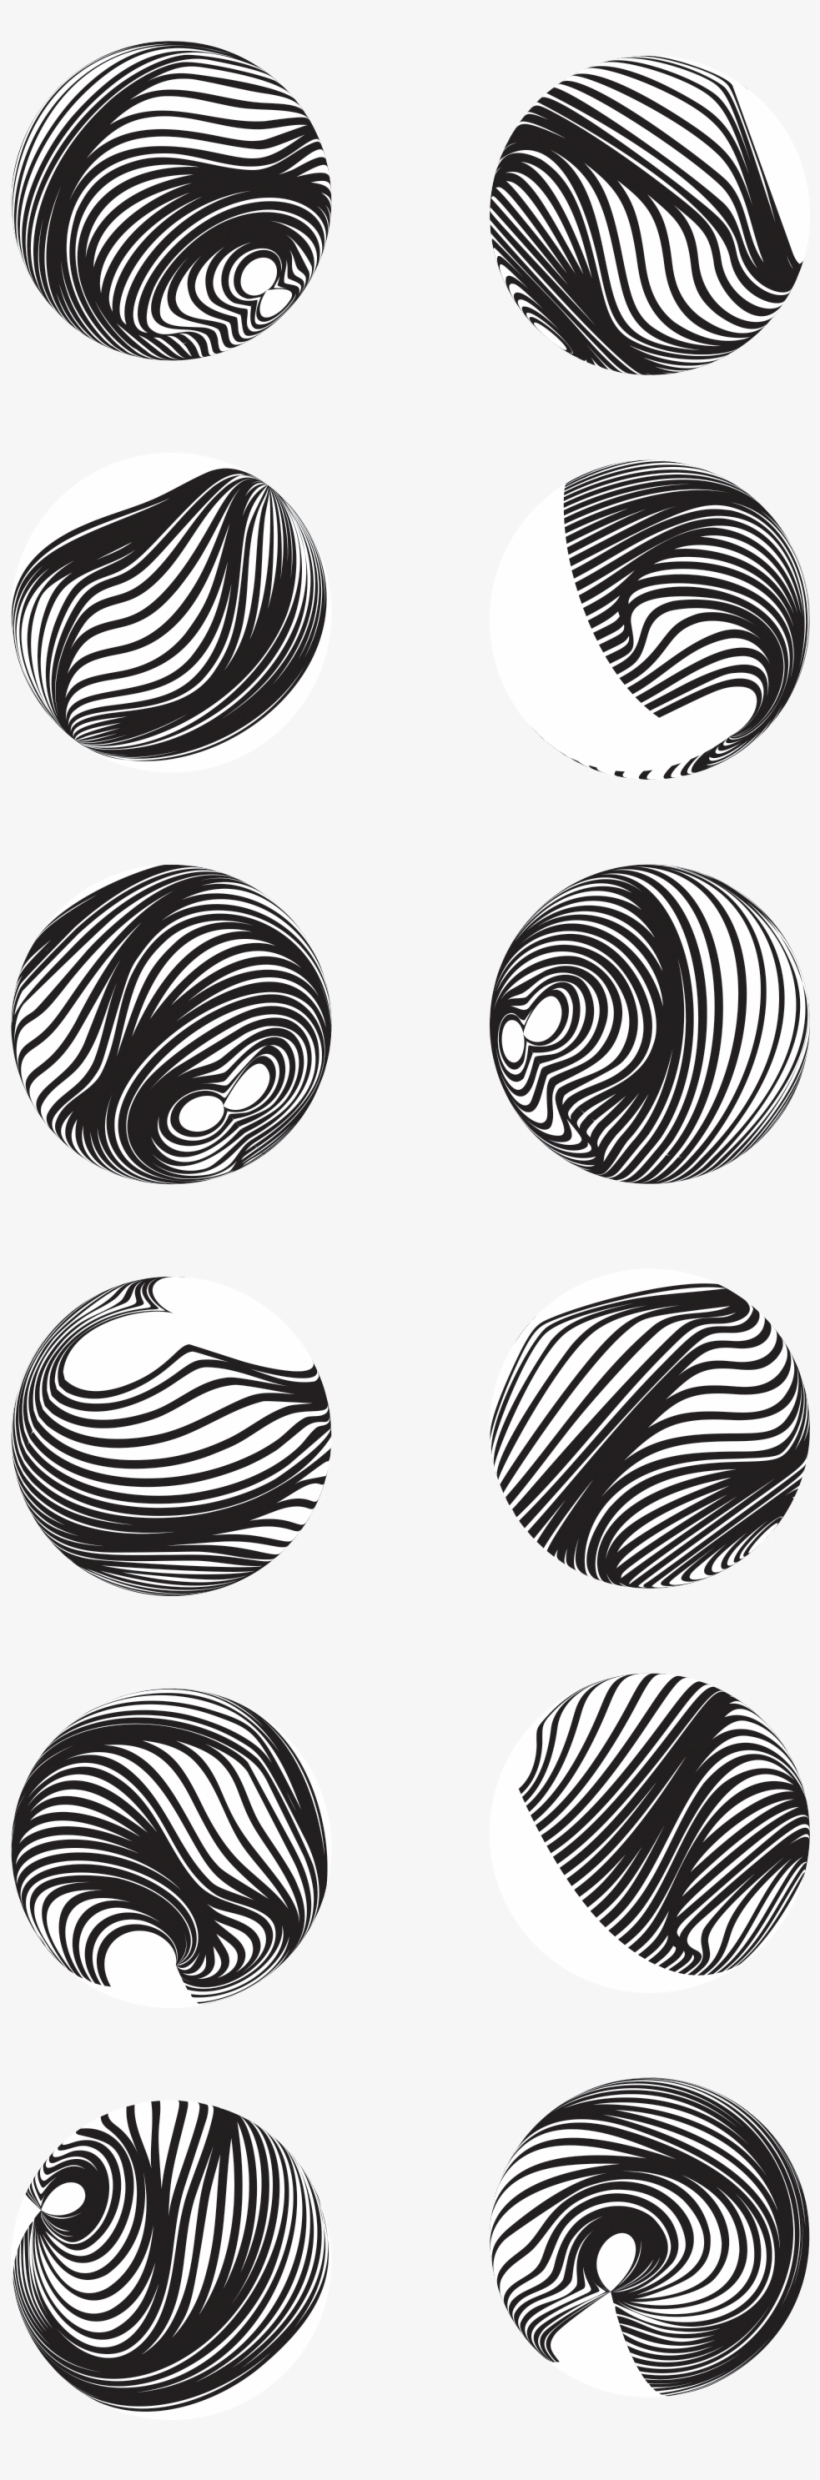 Orbs - Circle, transparent png #8486853